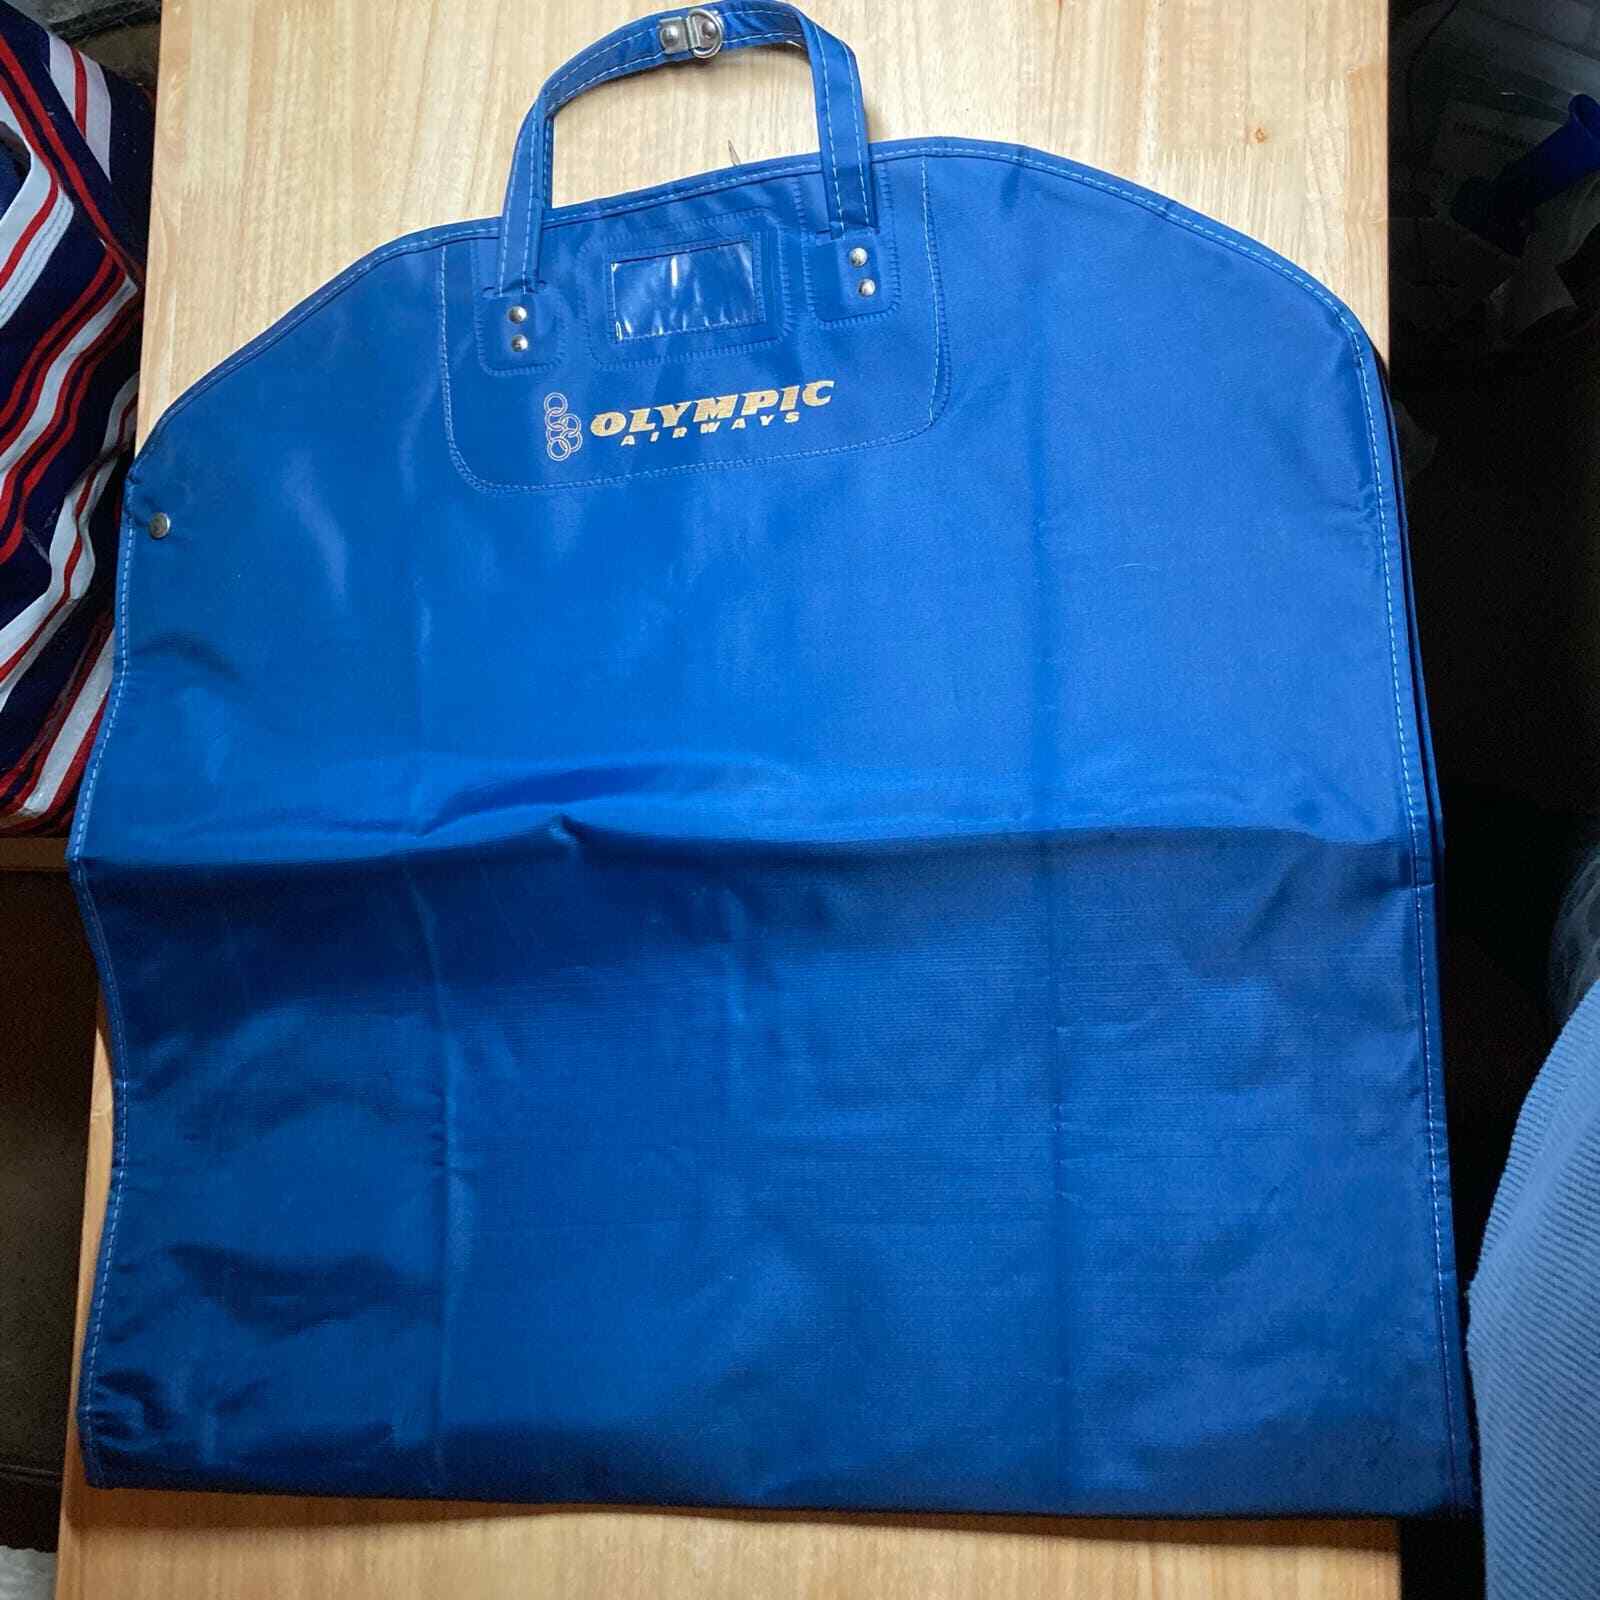 Olympic  Airways Vintage Royal Blue Vinyl Garment Bag. Pre-Owned